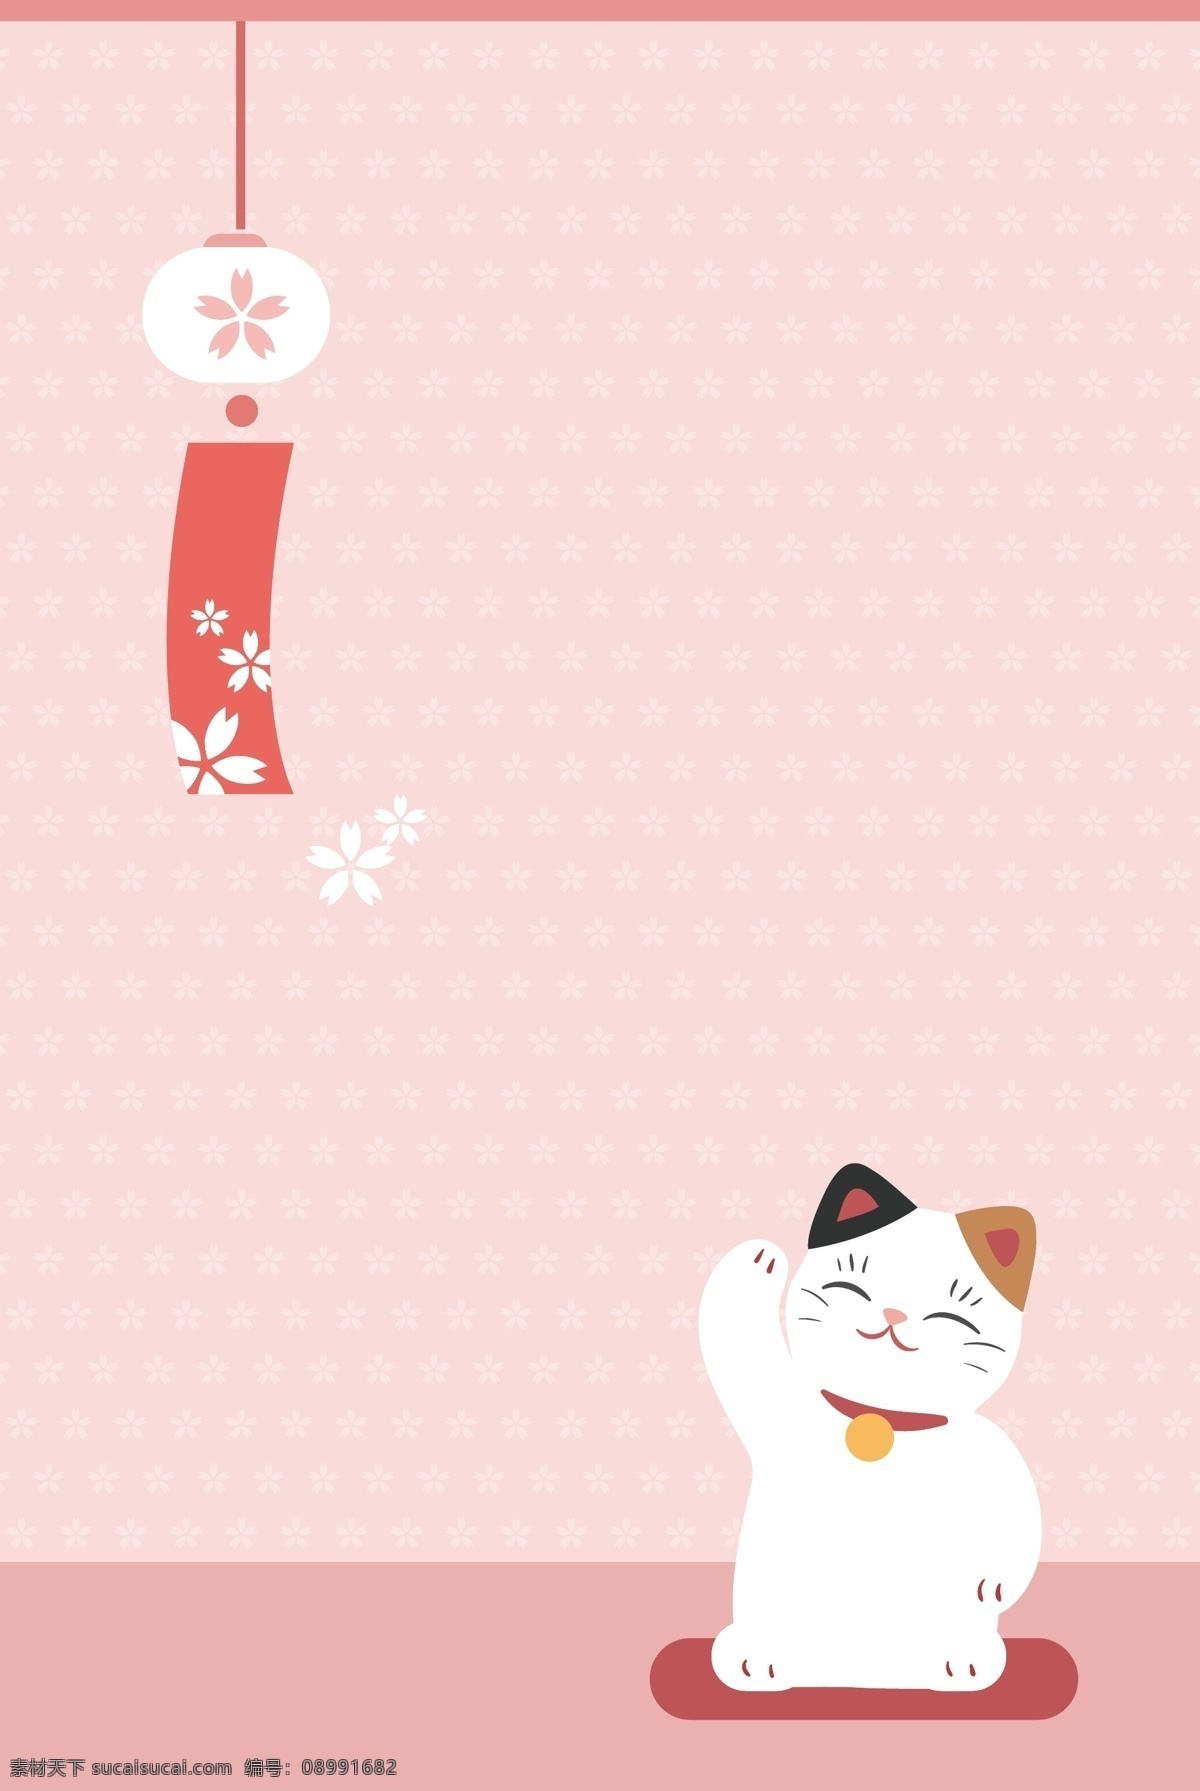 矢量 扁平化 卡通 手绘 招 财 猫 背景 可爱 招财猫 日式 粉色 卡通招财猫 日式风铃 日本 日文文化 海报